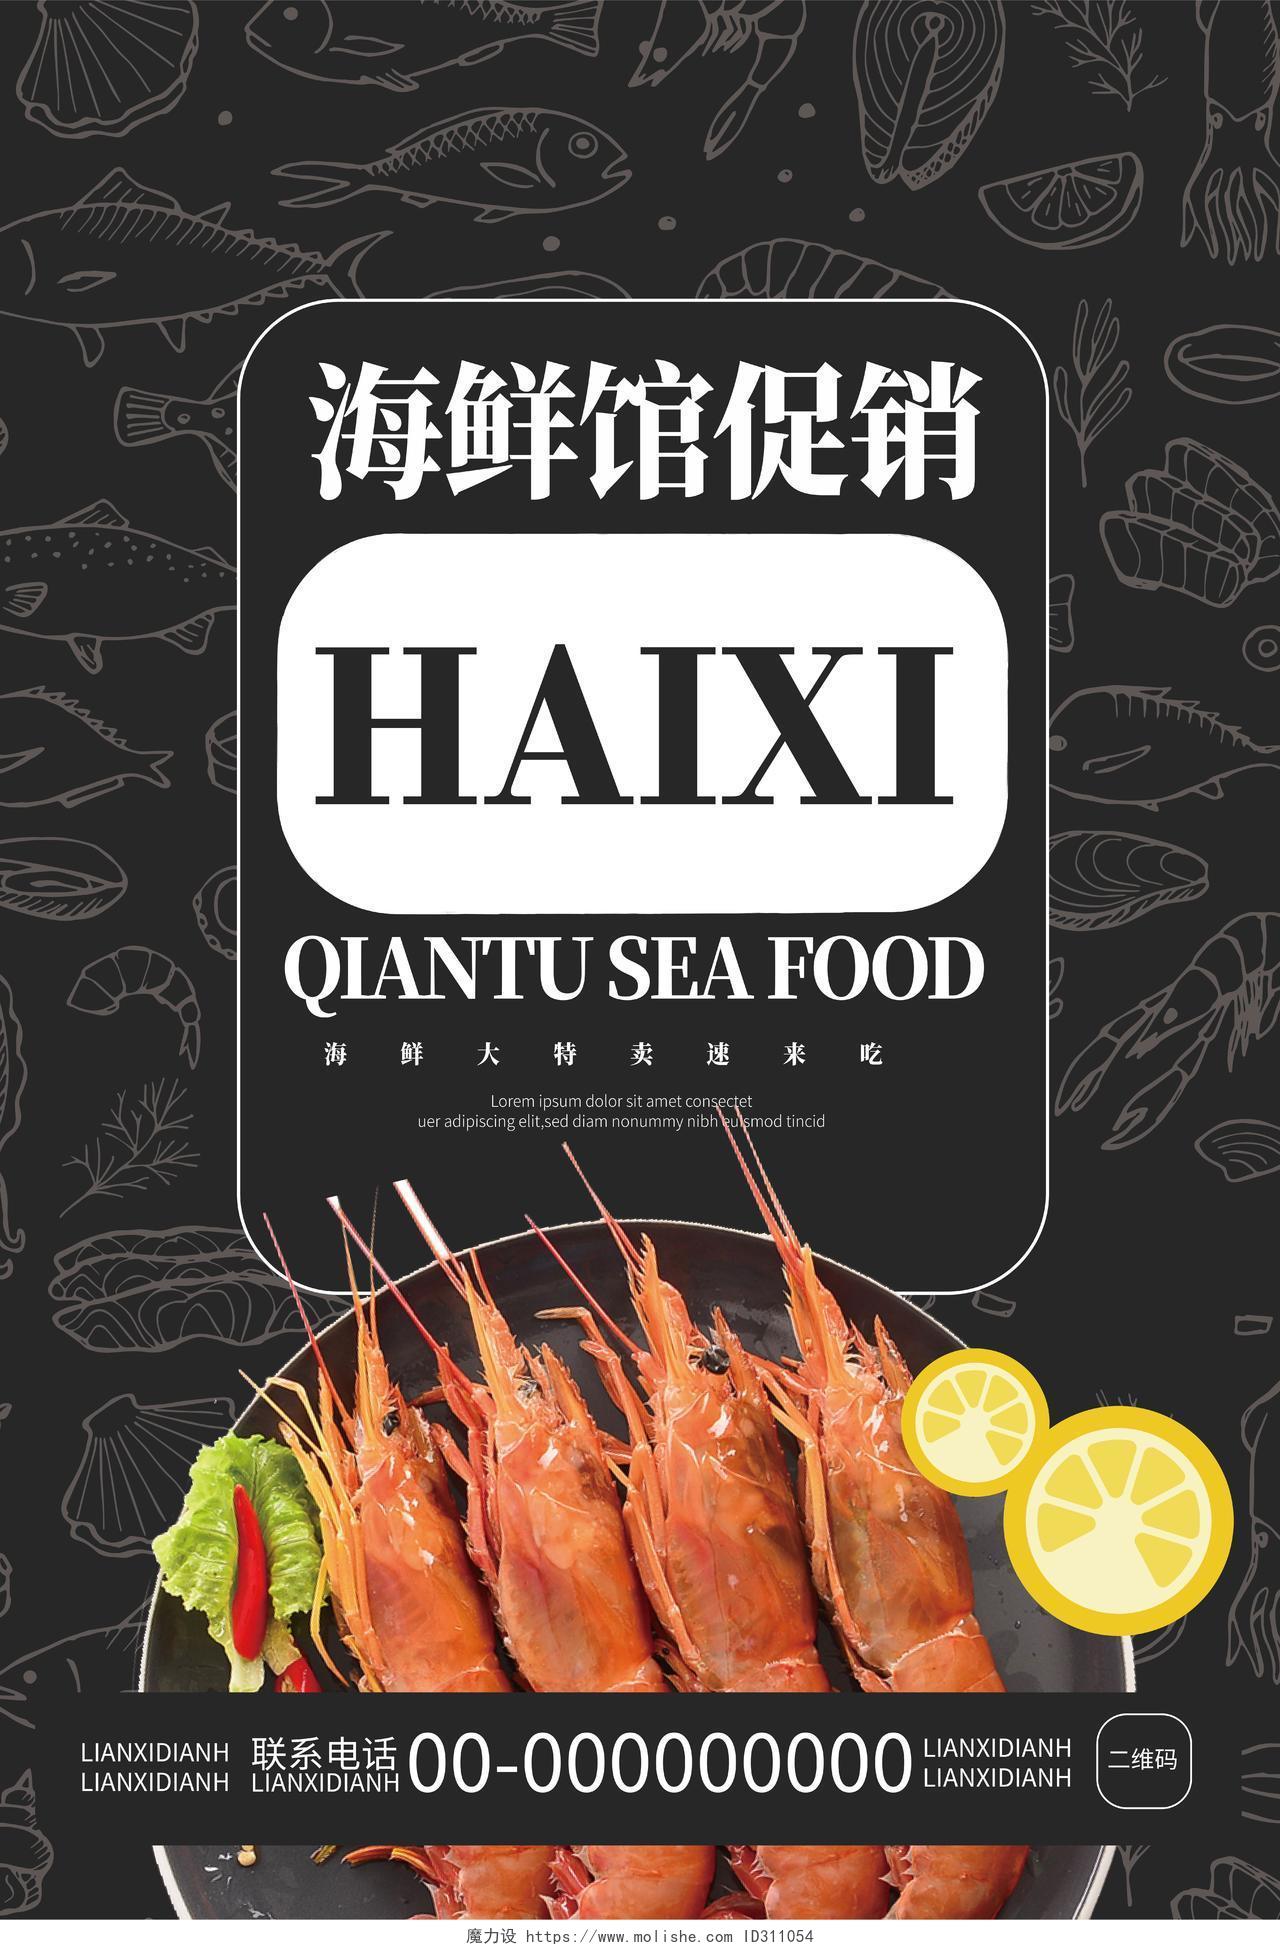 黑色简洁创意海鲜馆促销餐馆饭店海鲜促销宣传单海鲜菜单